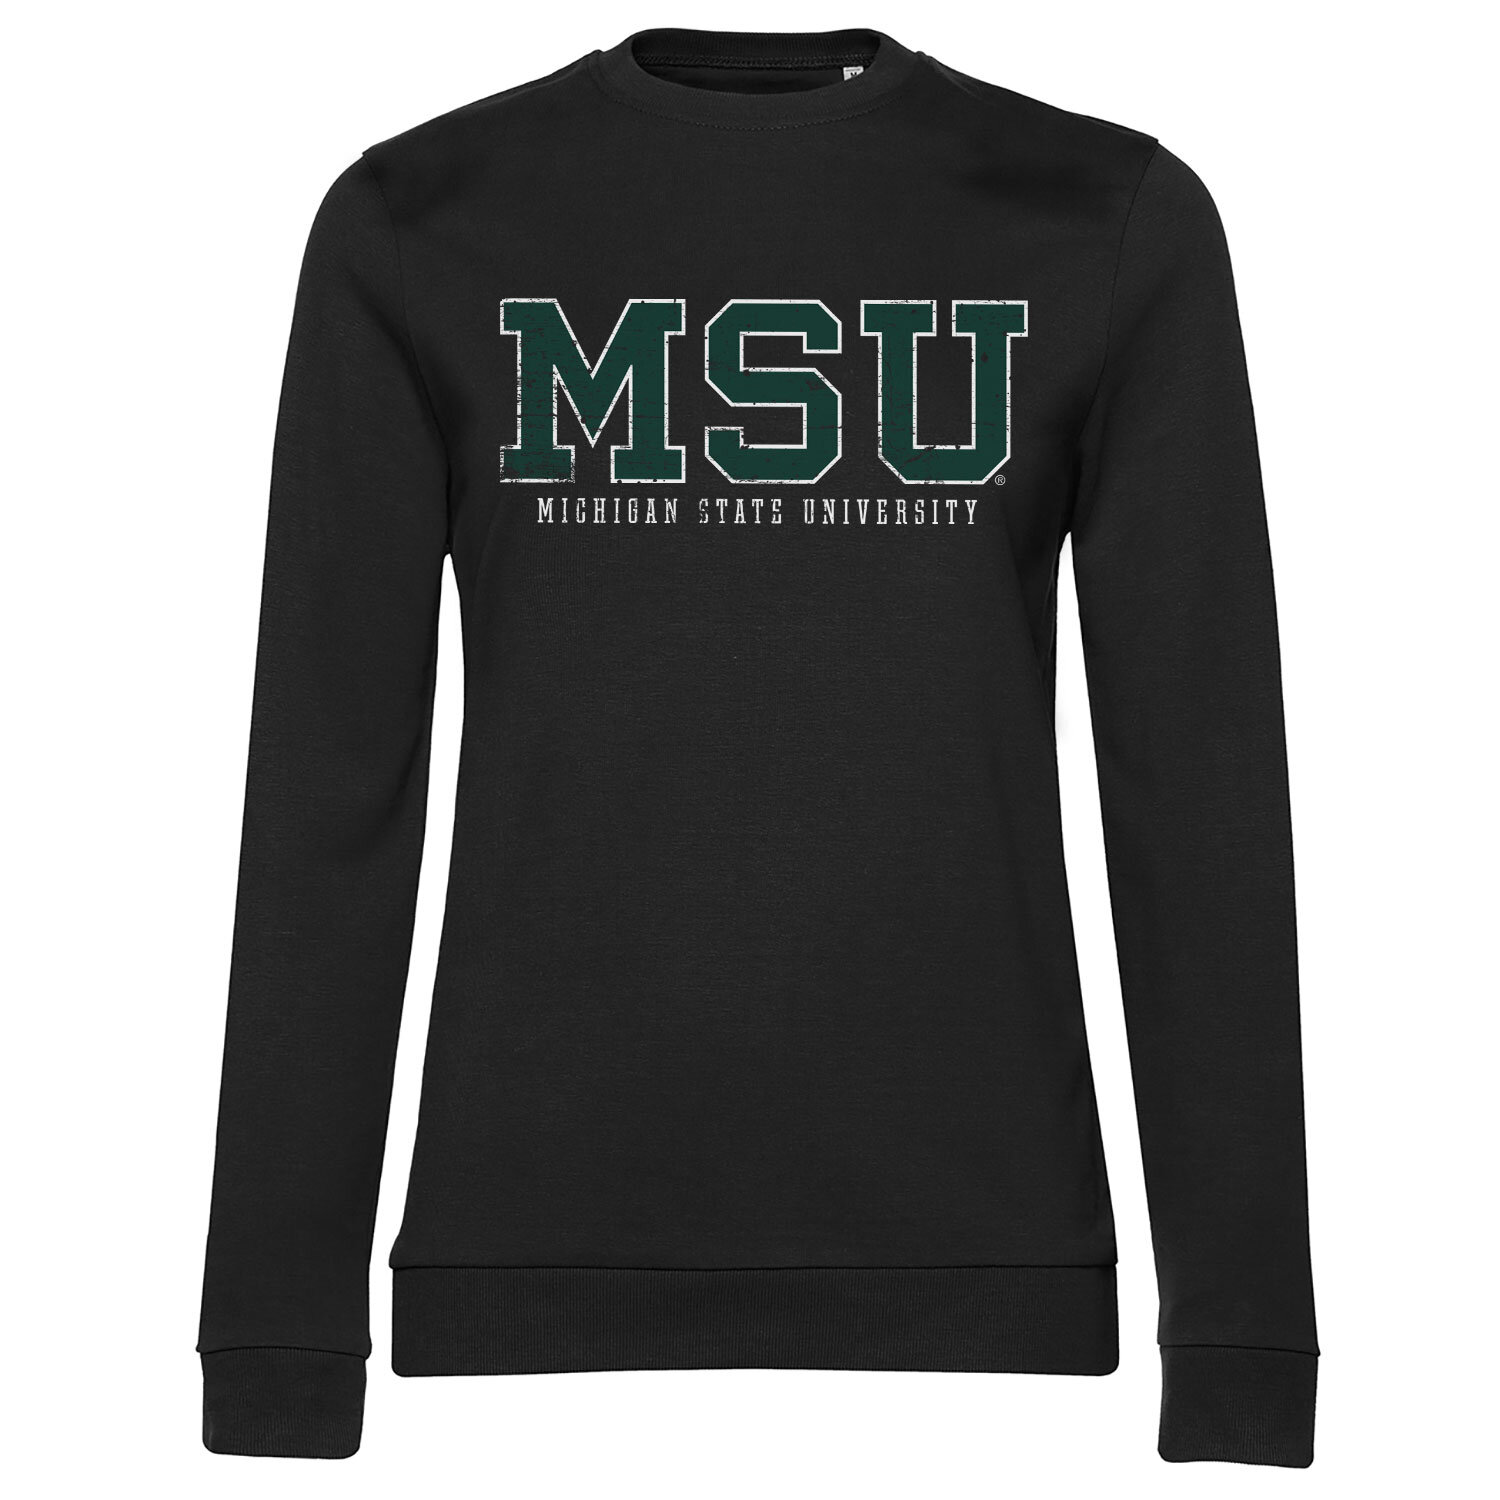 MSU - Michigan State University Girls Sweatshirt